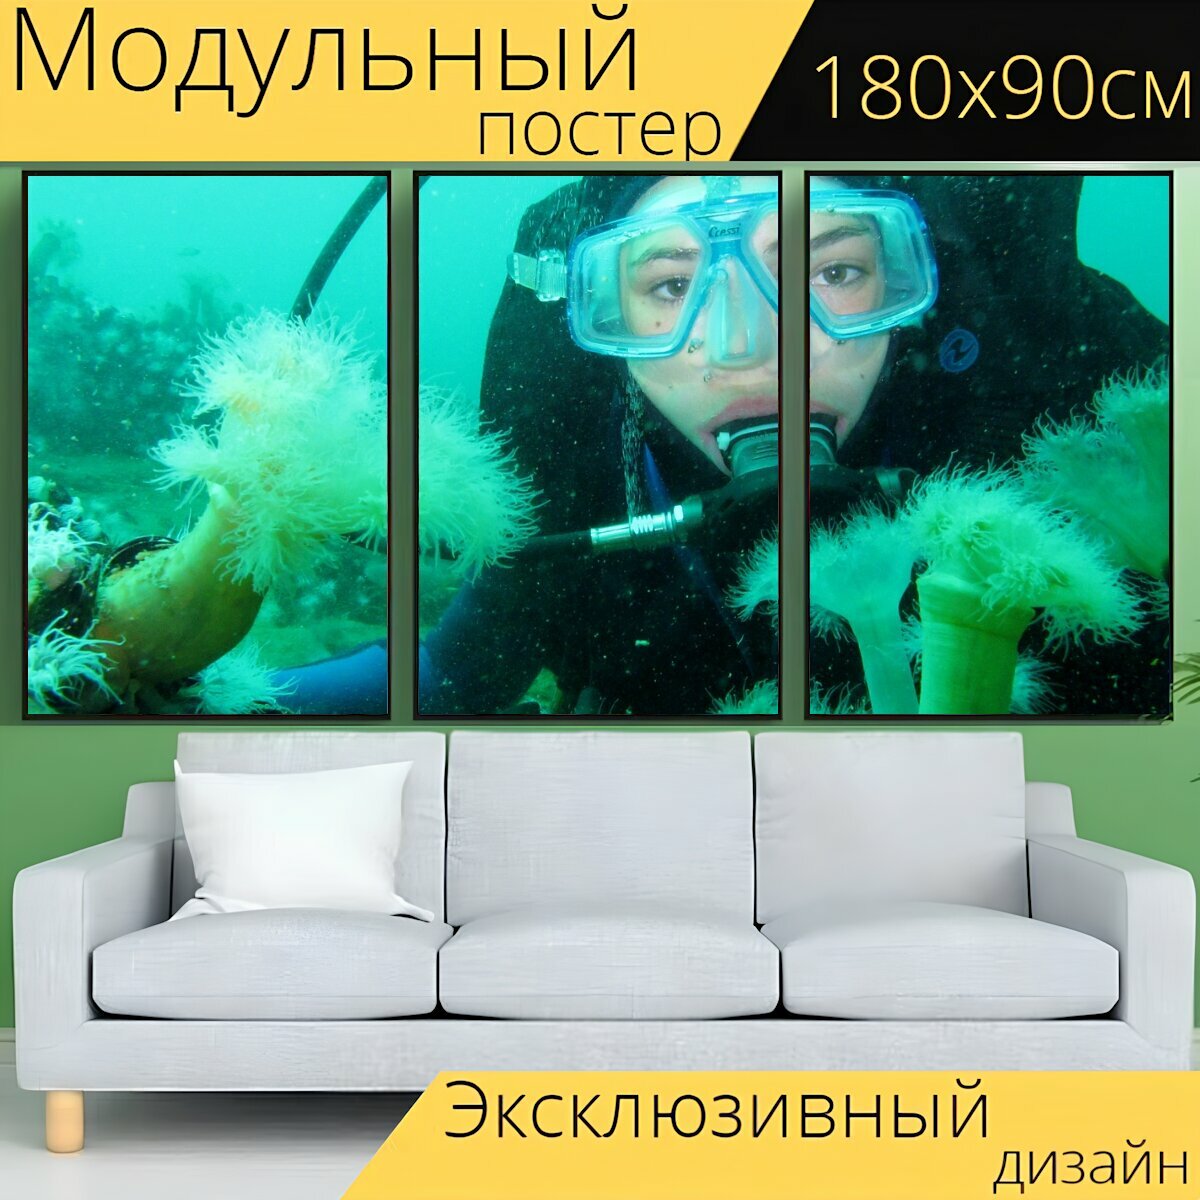 Модульный постер "Дайвинг, подводное плавание с аквалангом, дно моря" 180 x 90 см. для интерьера